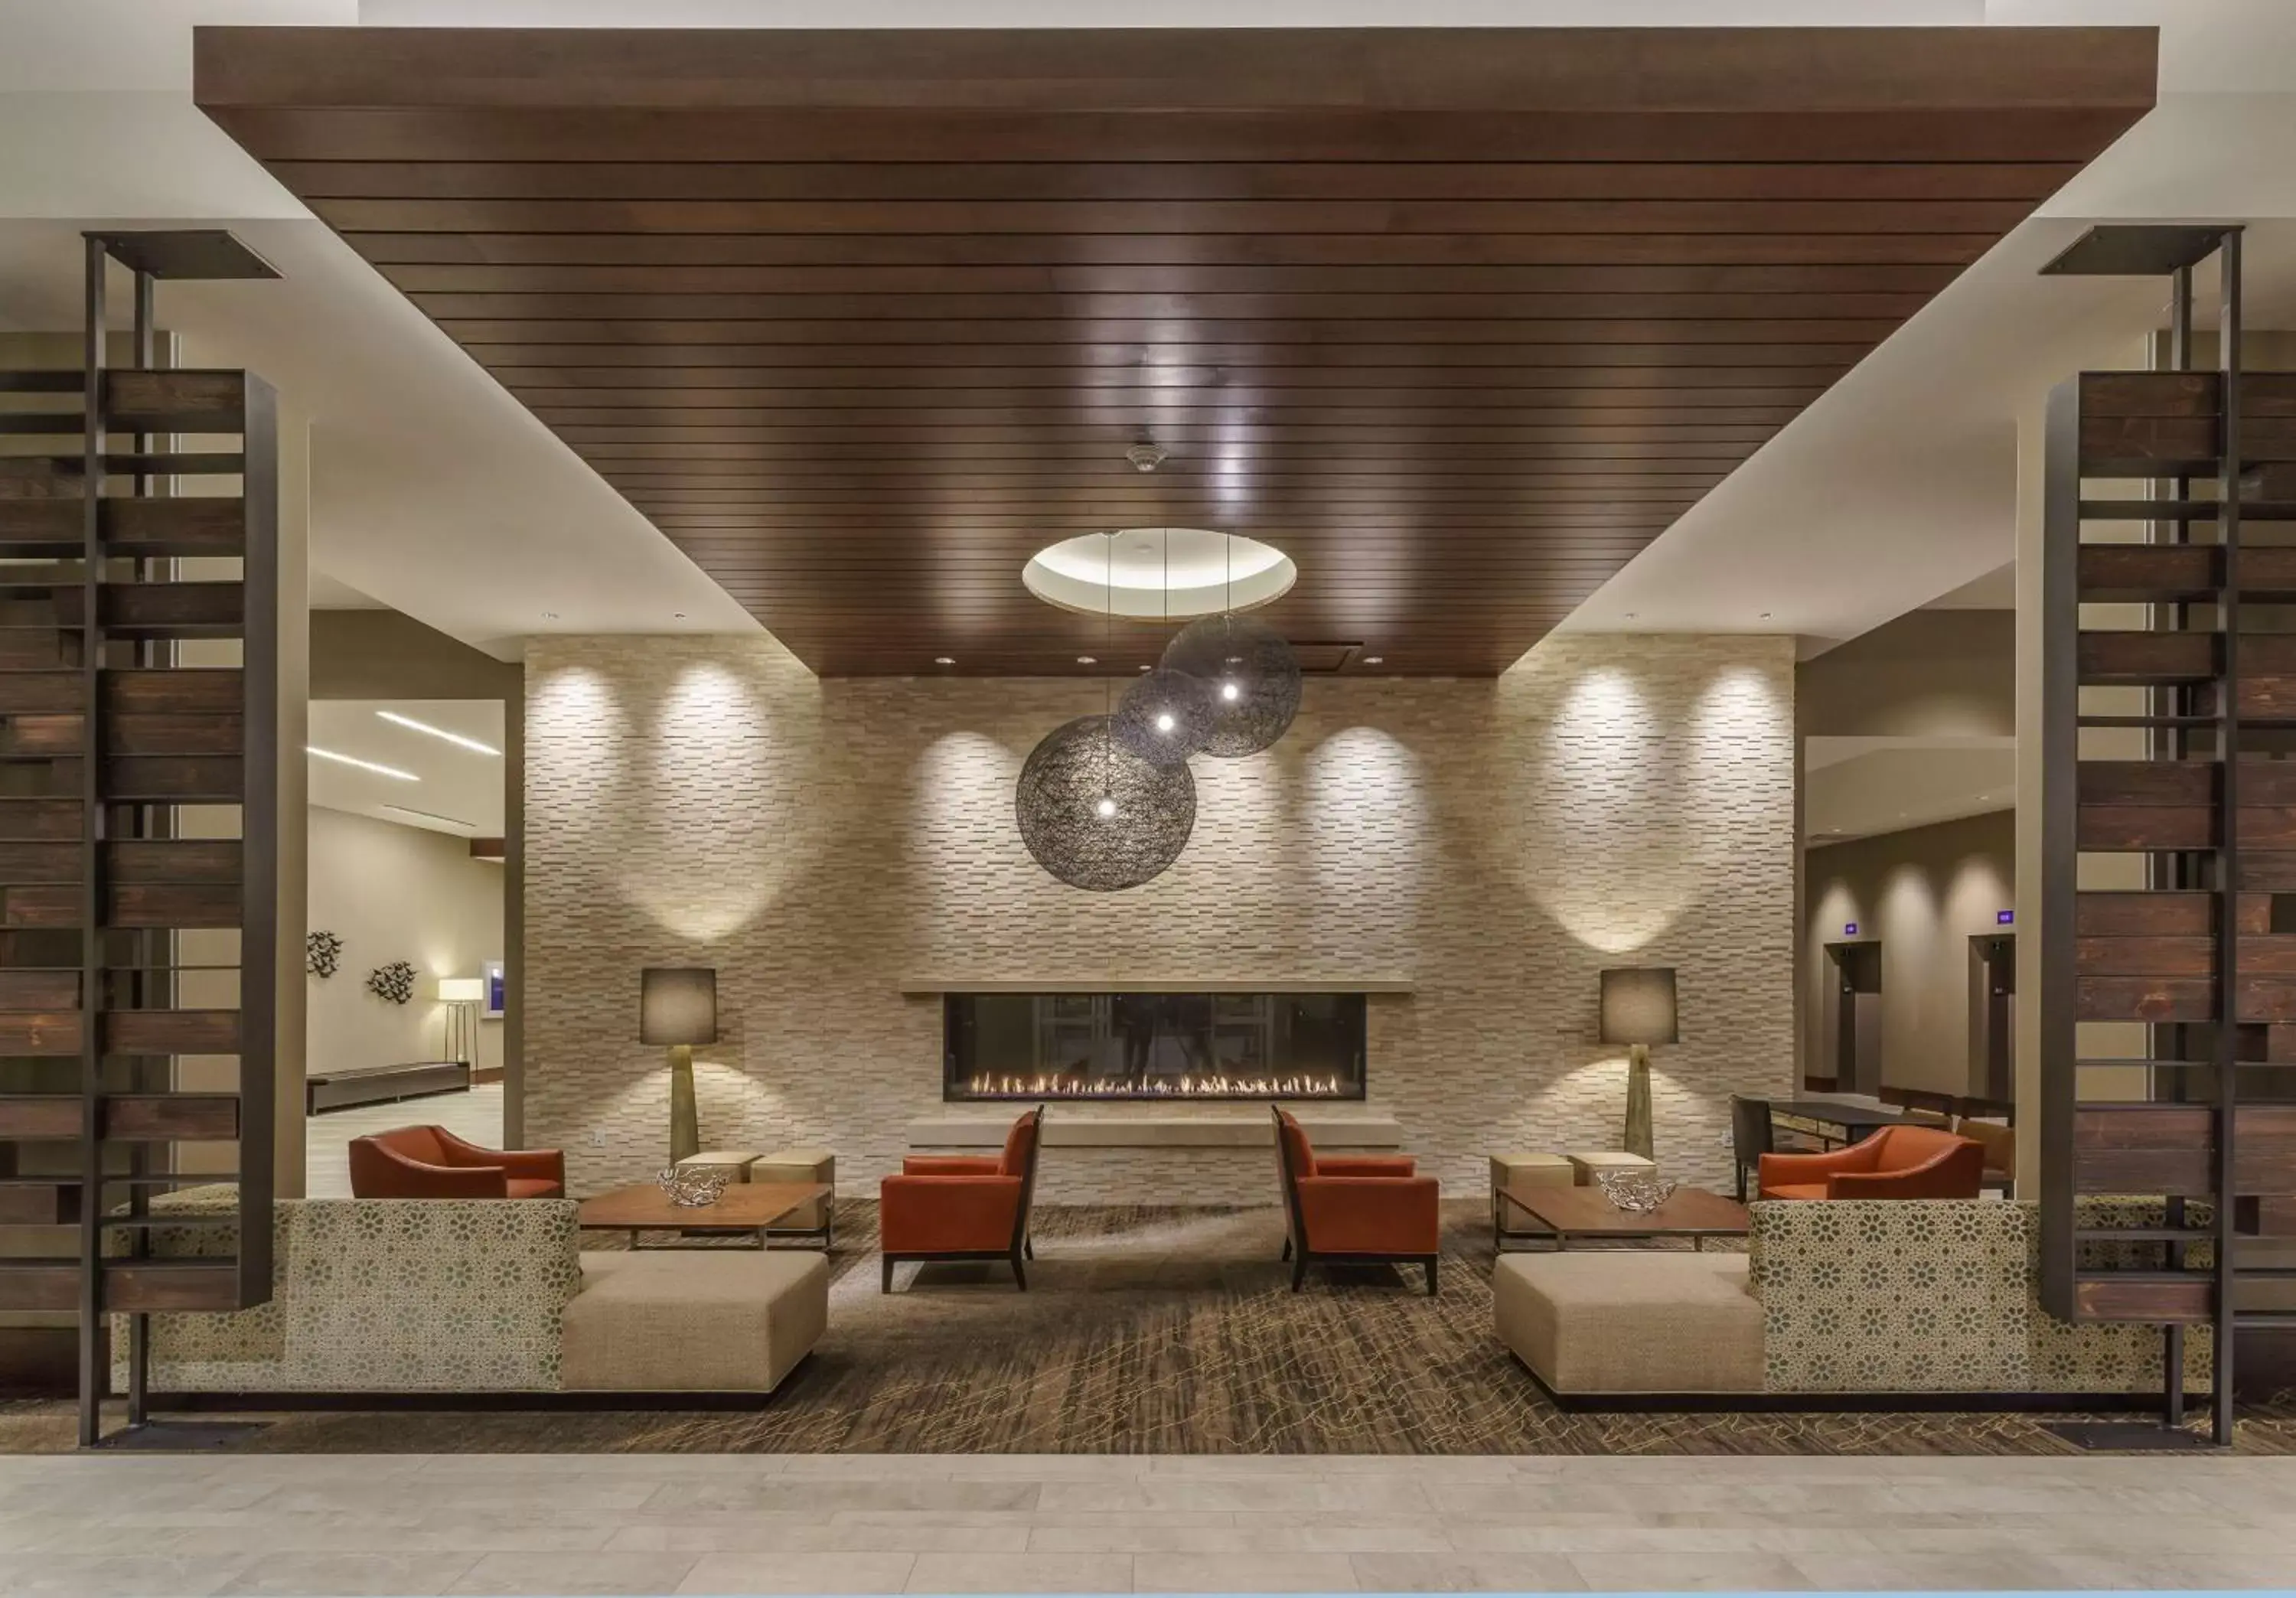 Lobby or reception, Lobby/Reception in Hyatt Regency Aurora-Denver Conference Center